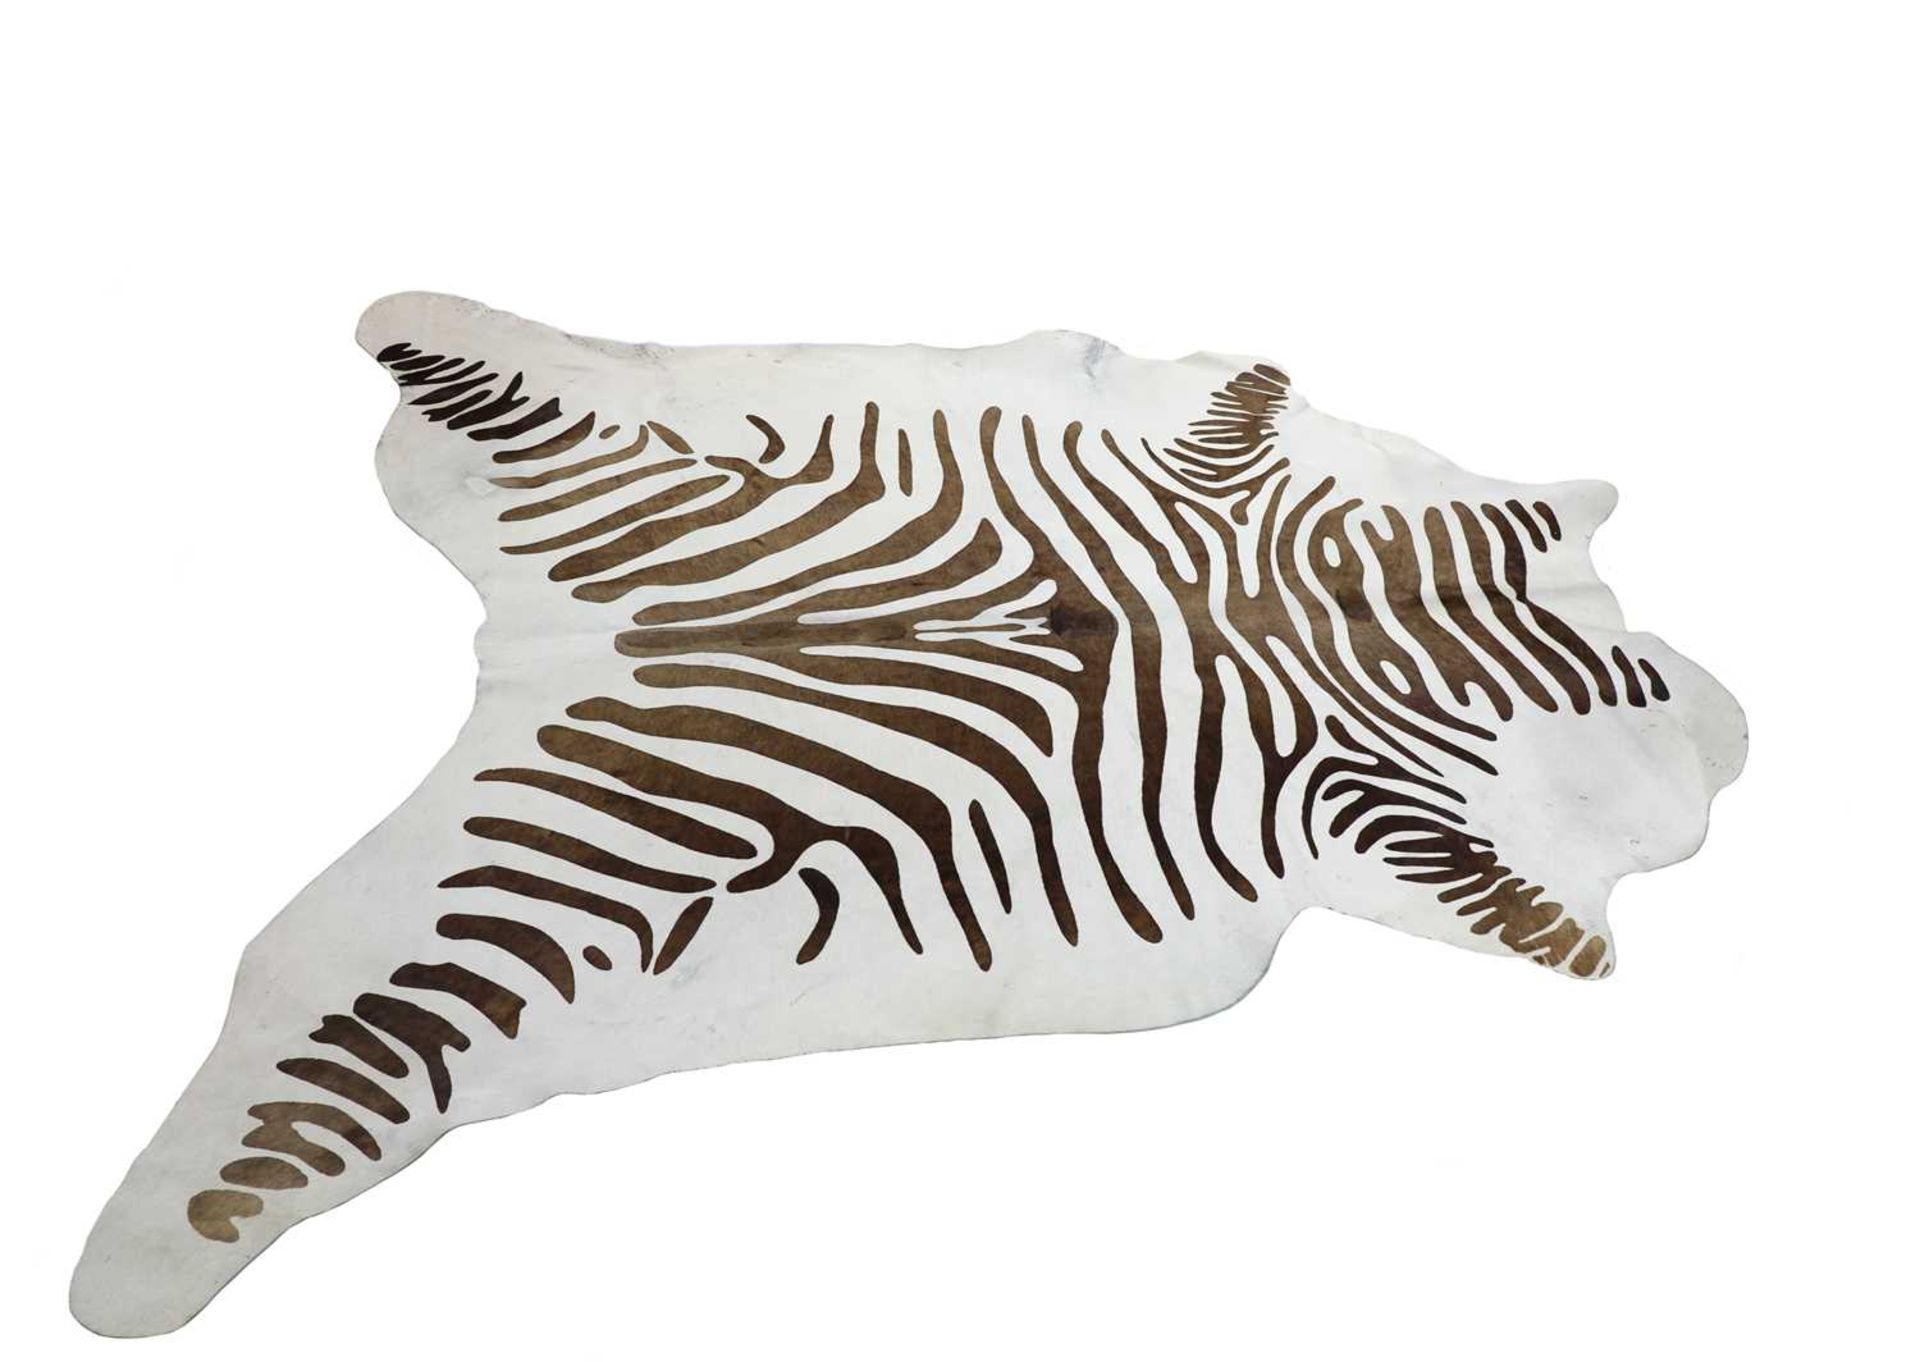 A Zebra skin rug,